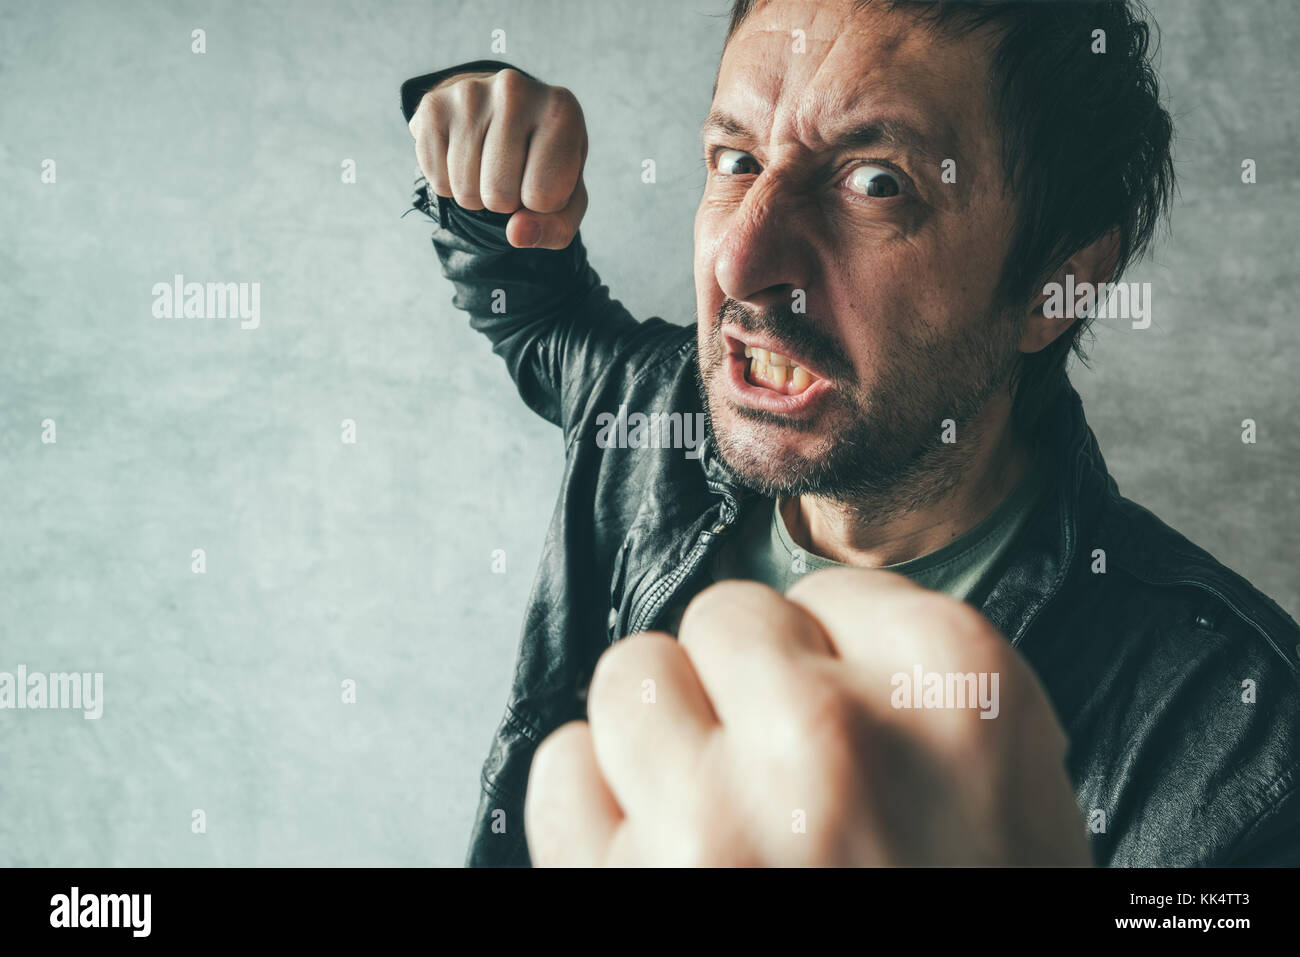 Aggressive mann Stanzen mit Faust während des Kampfes, aus Sicht der Opfer von Gewalt und Kriminalität. Stockfoto